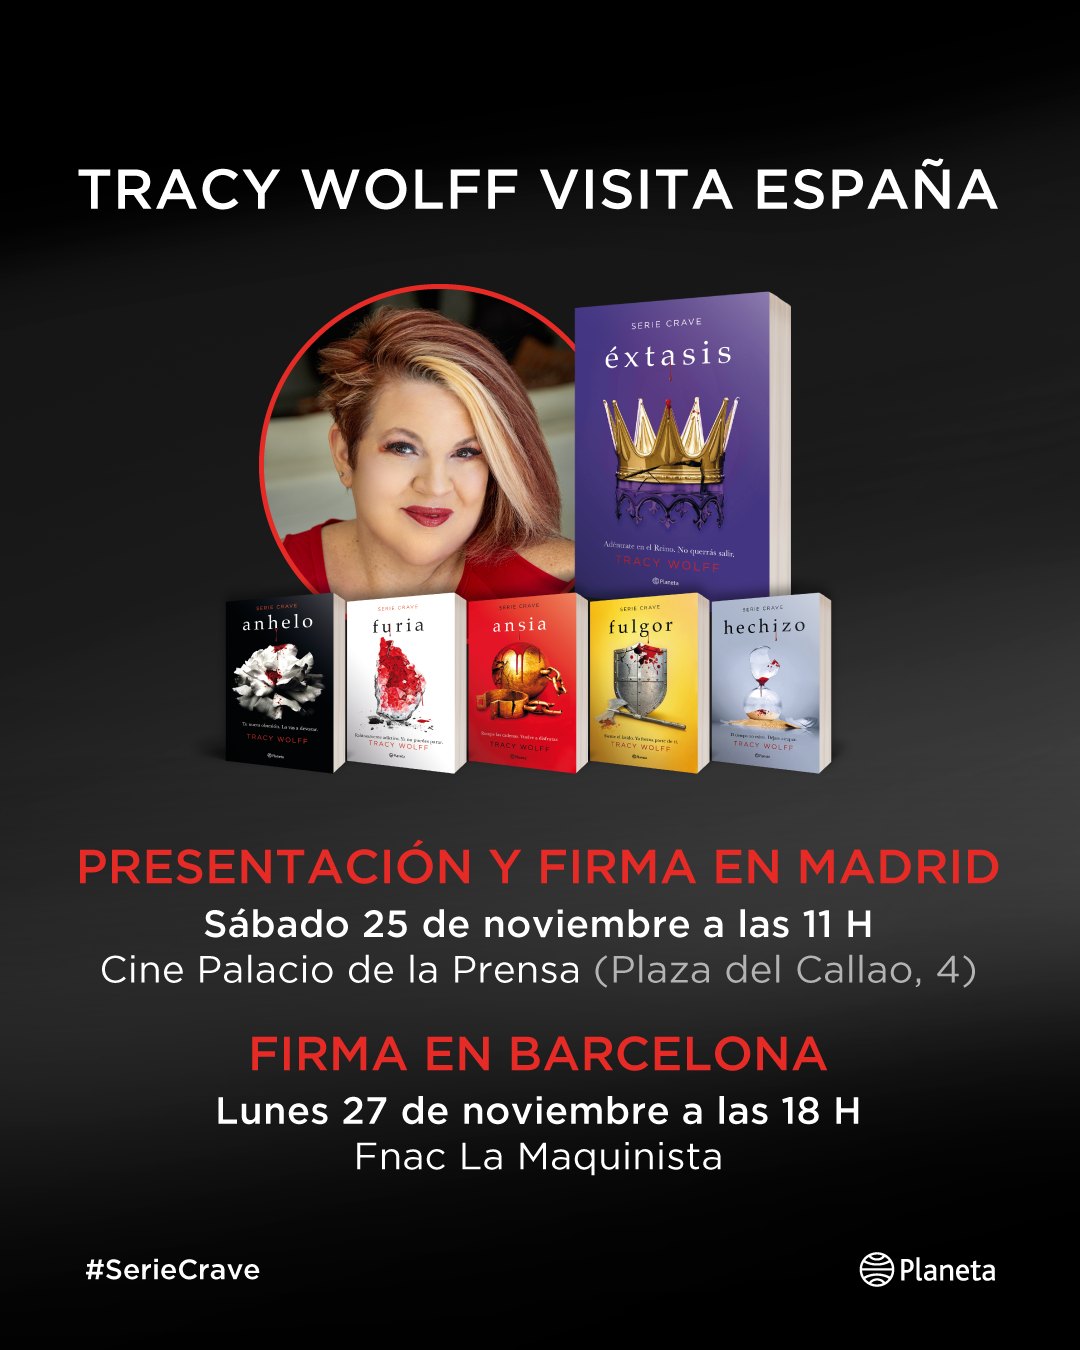 ¡Tracy Wolff en España! ¿Estás listo para conocerla?